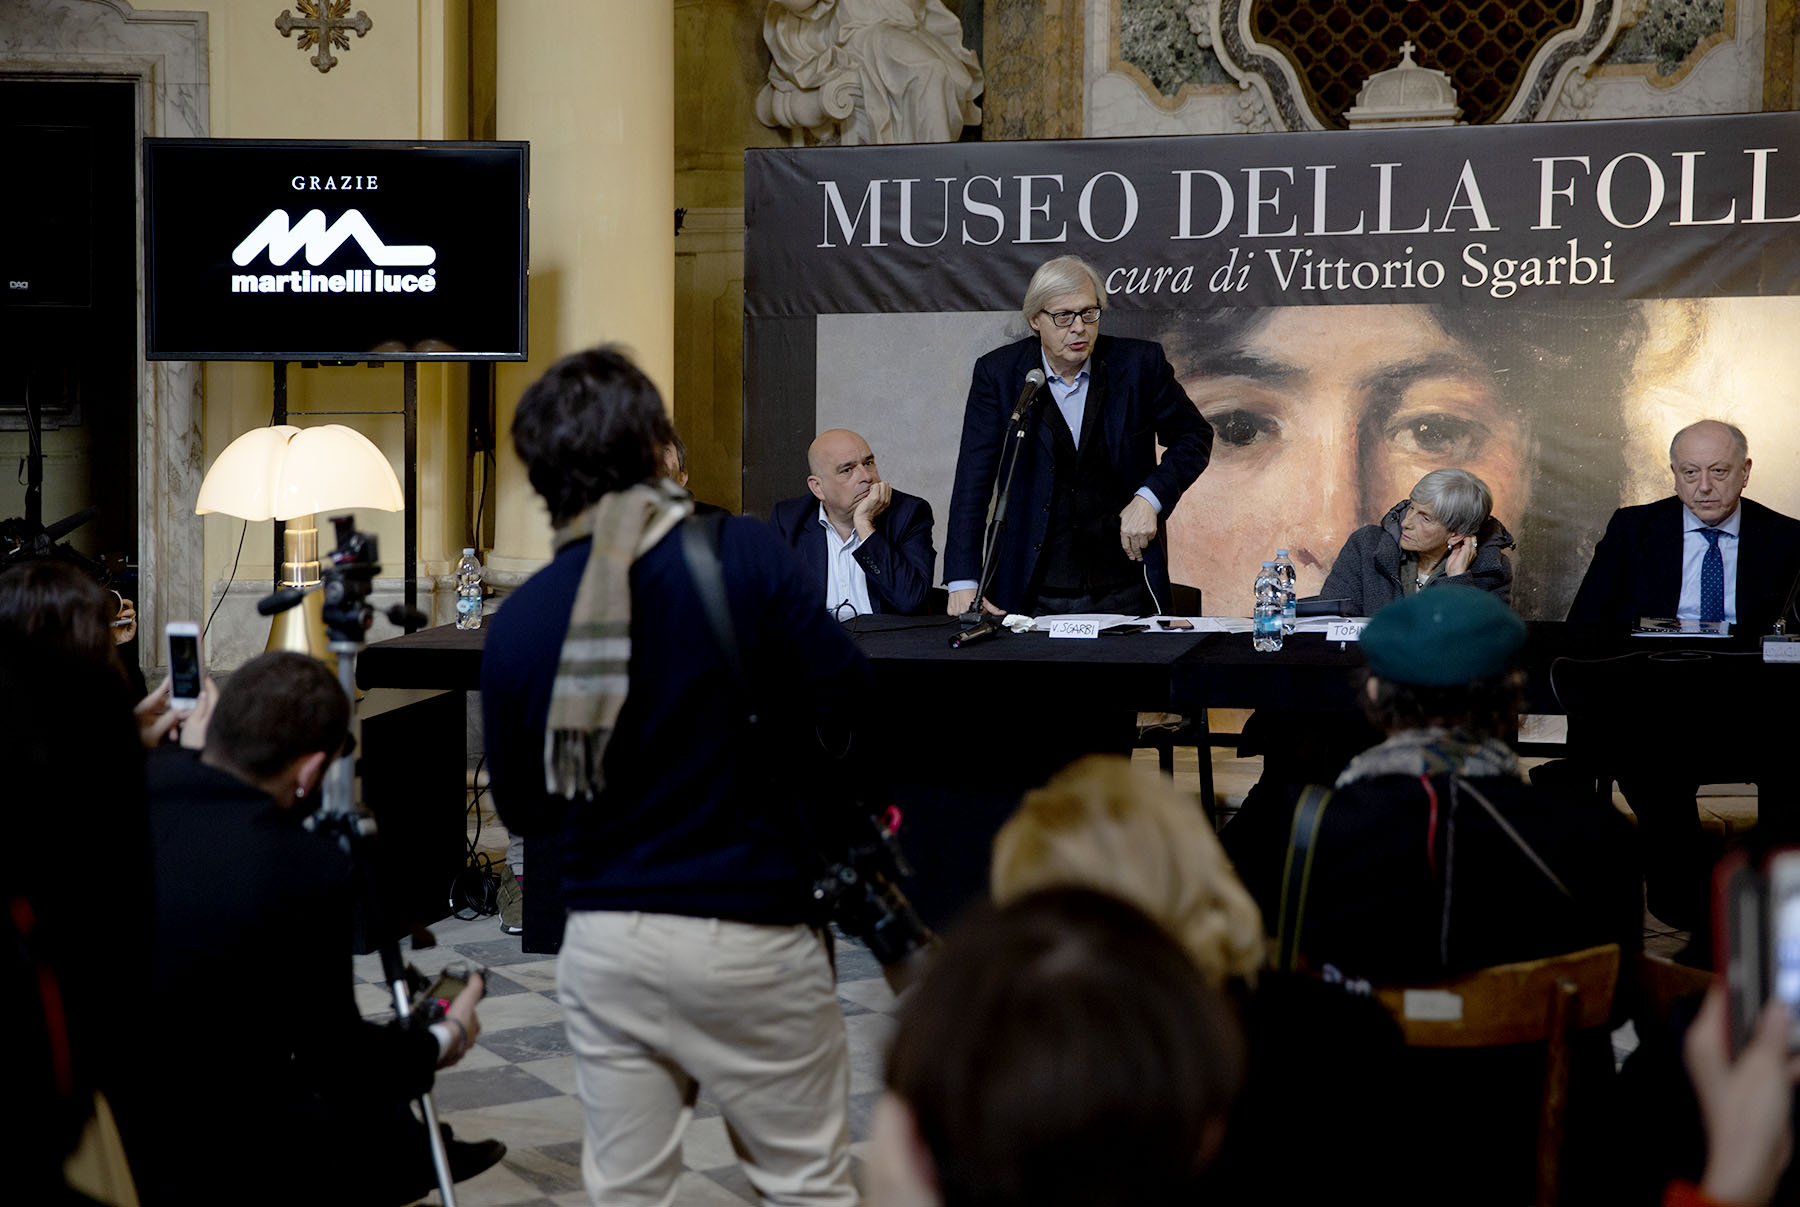 Martinelli Luce illumina il Museo della Follia di Lucca nuova tappa del progetto itinerante di Vittorio Sgarbi